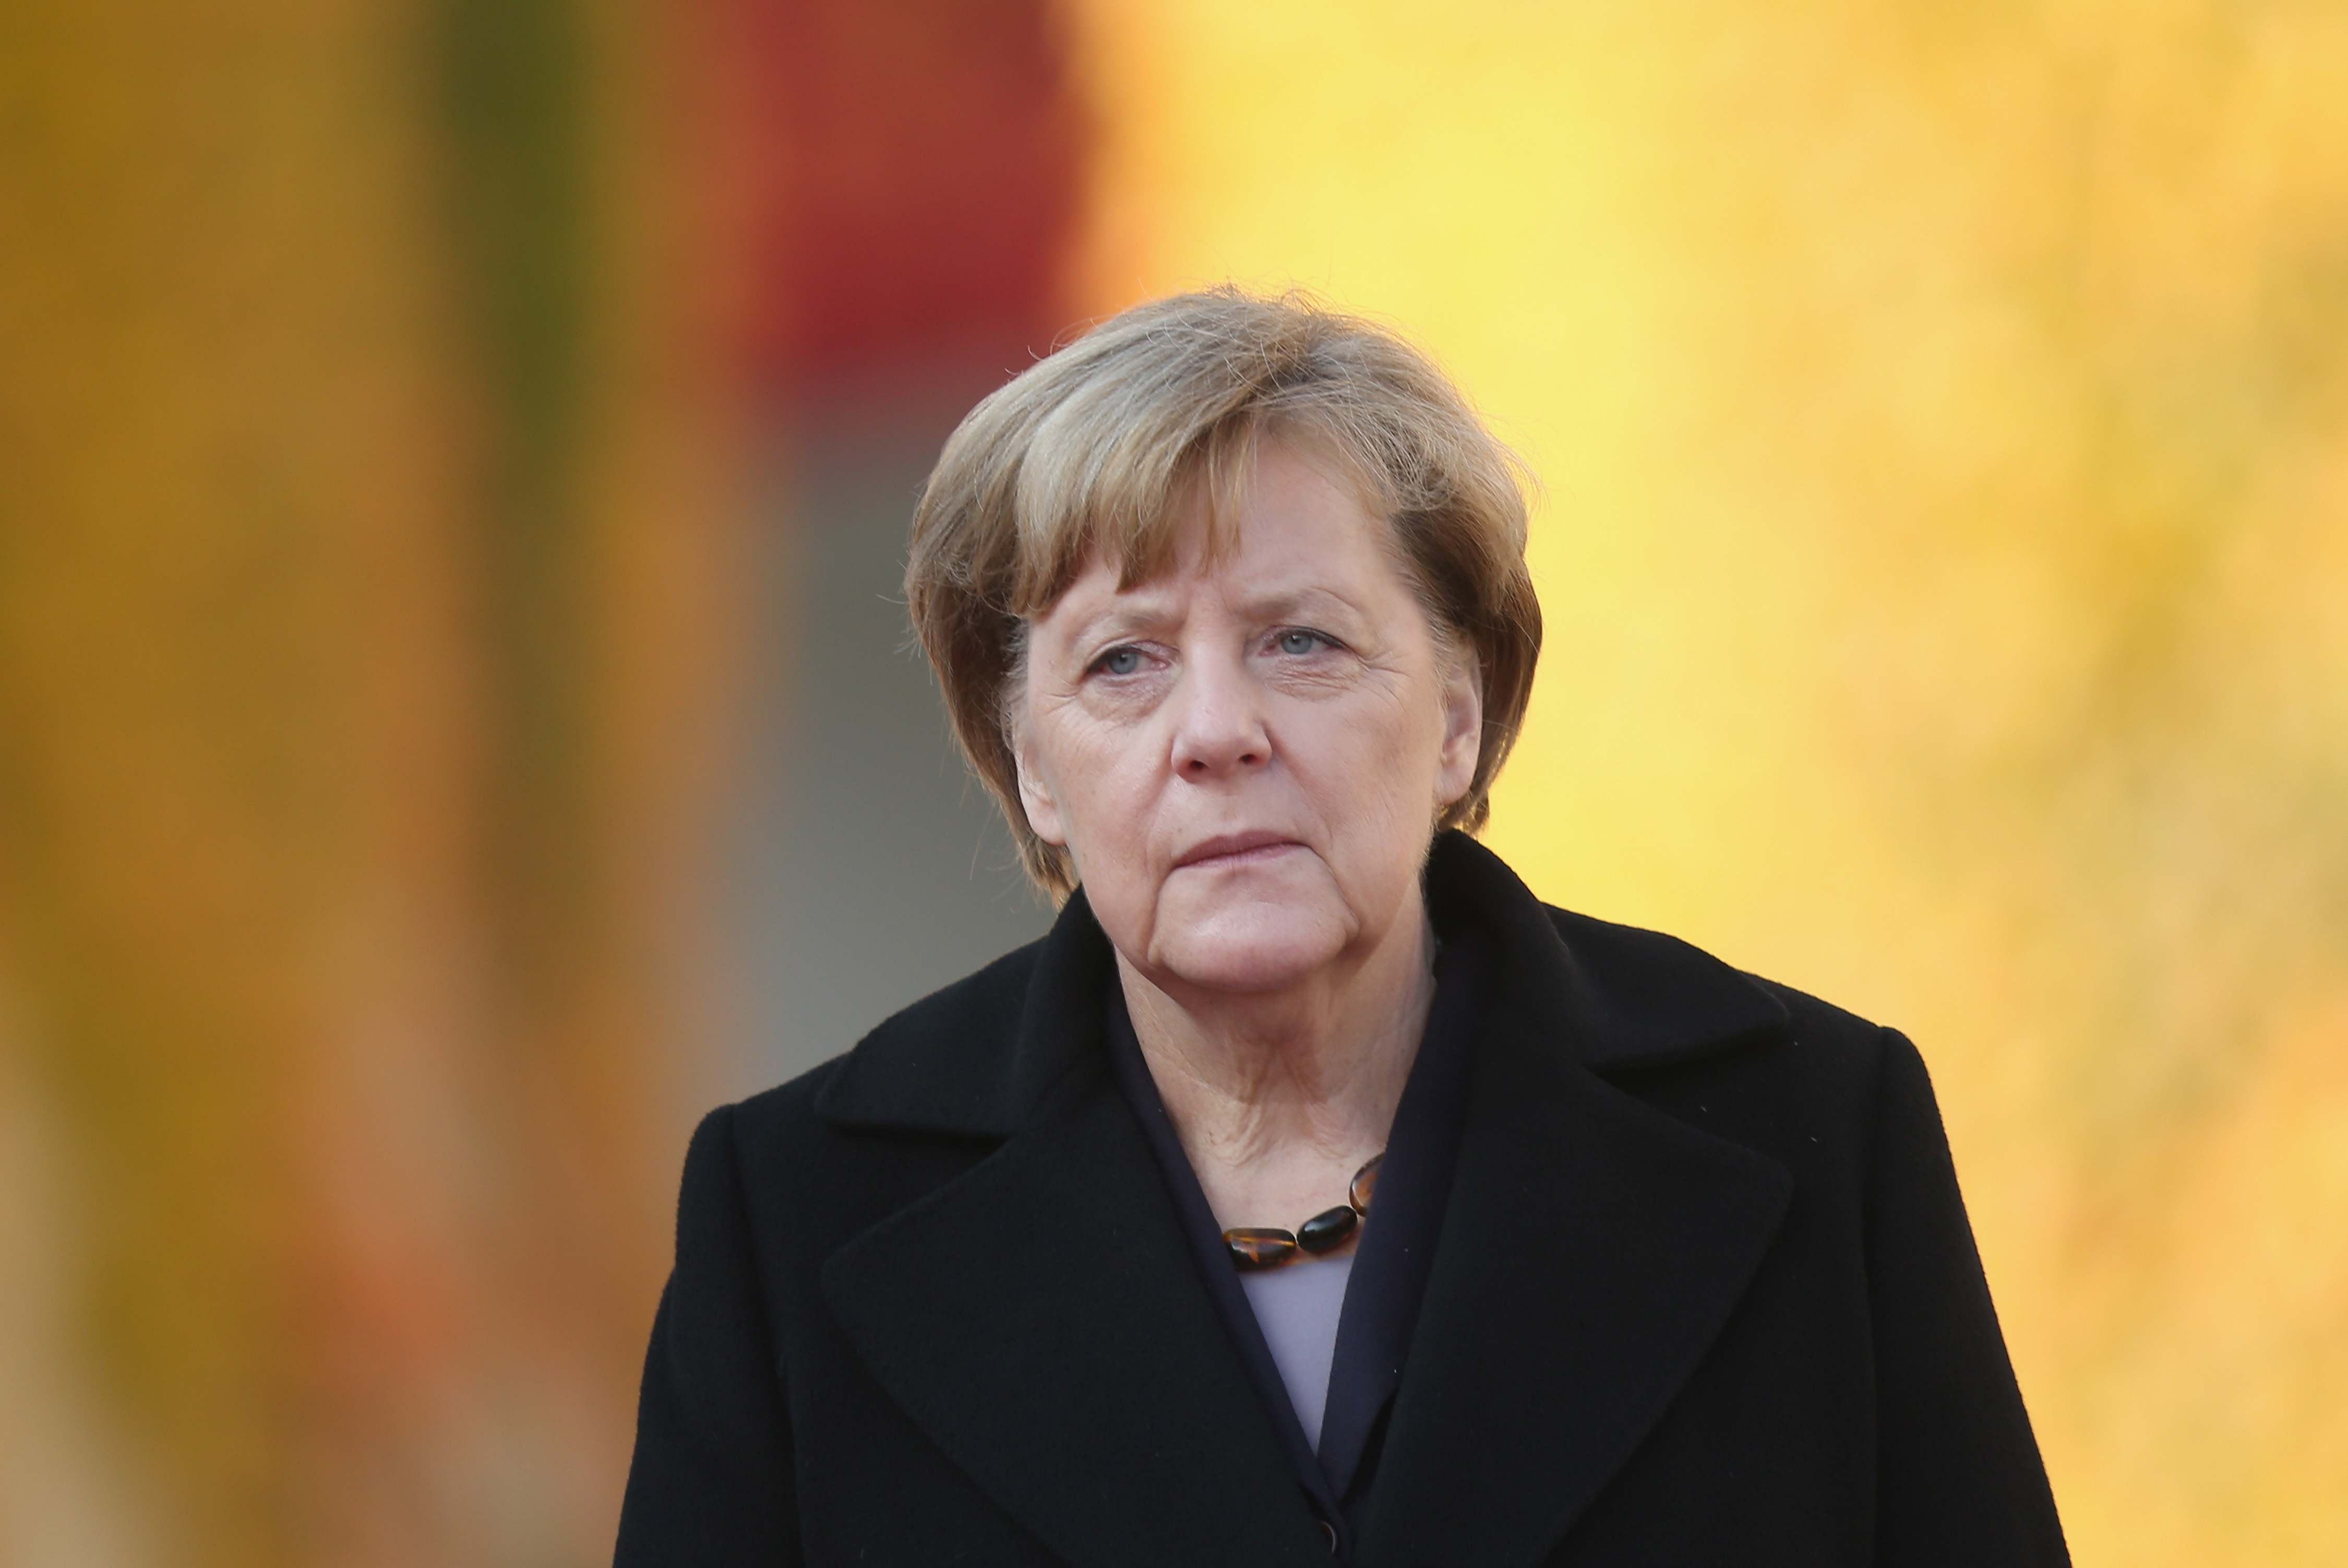 400 Anzeigen gegen Merkel: Darunter Hochverrat und Schleuserei